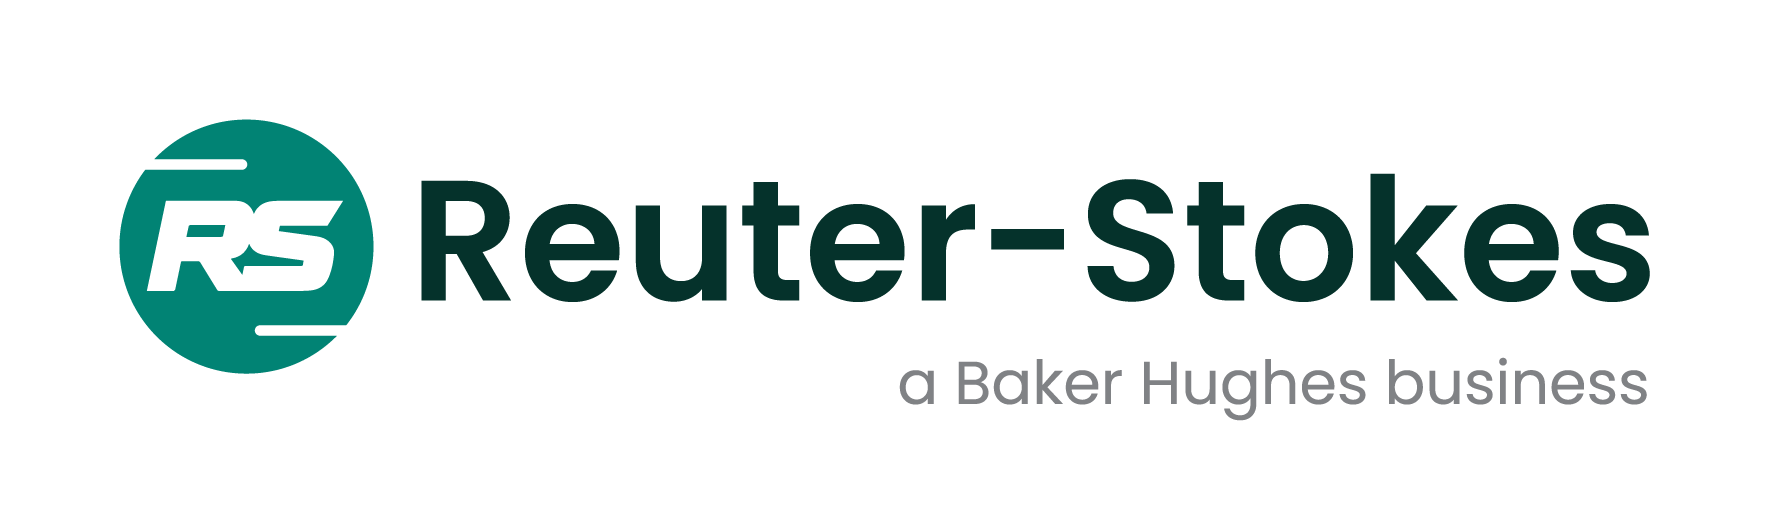 Reuter-Stokes, a Baker Hughes business Inicio